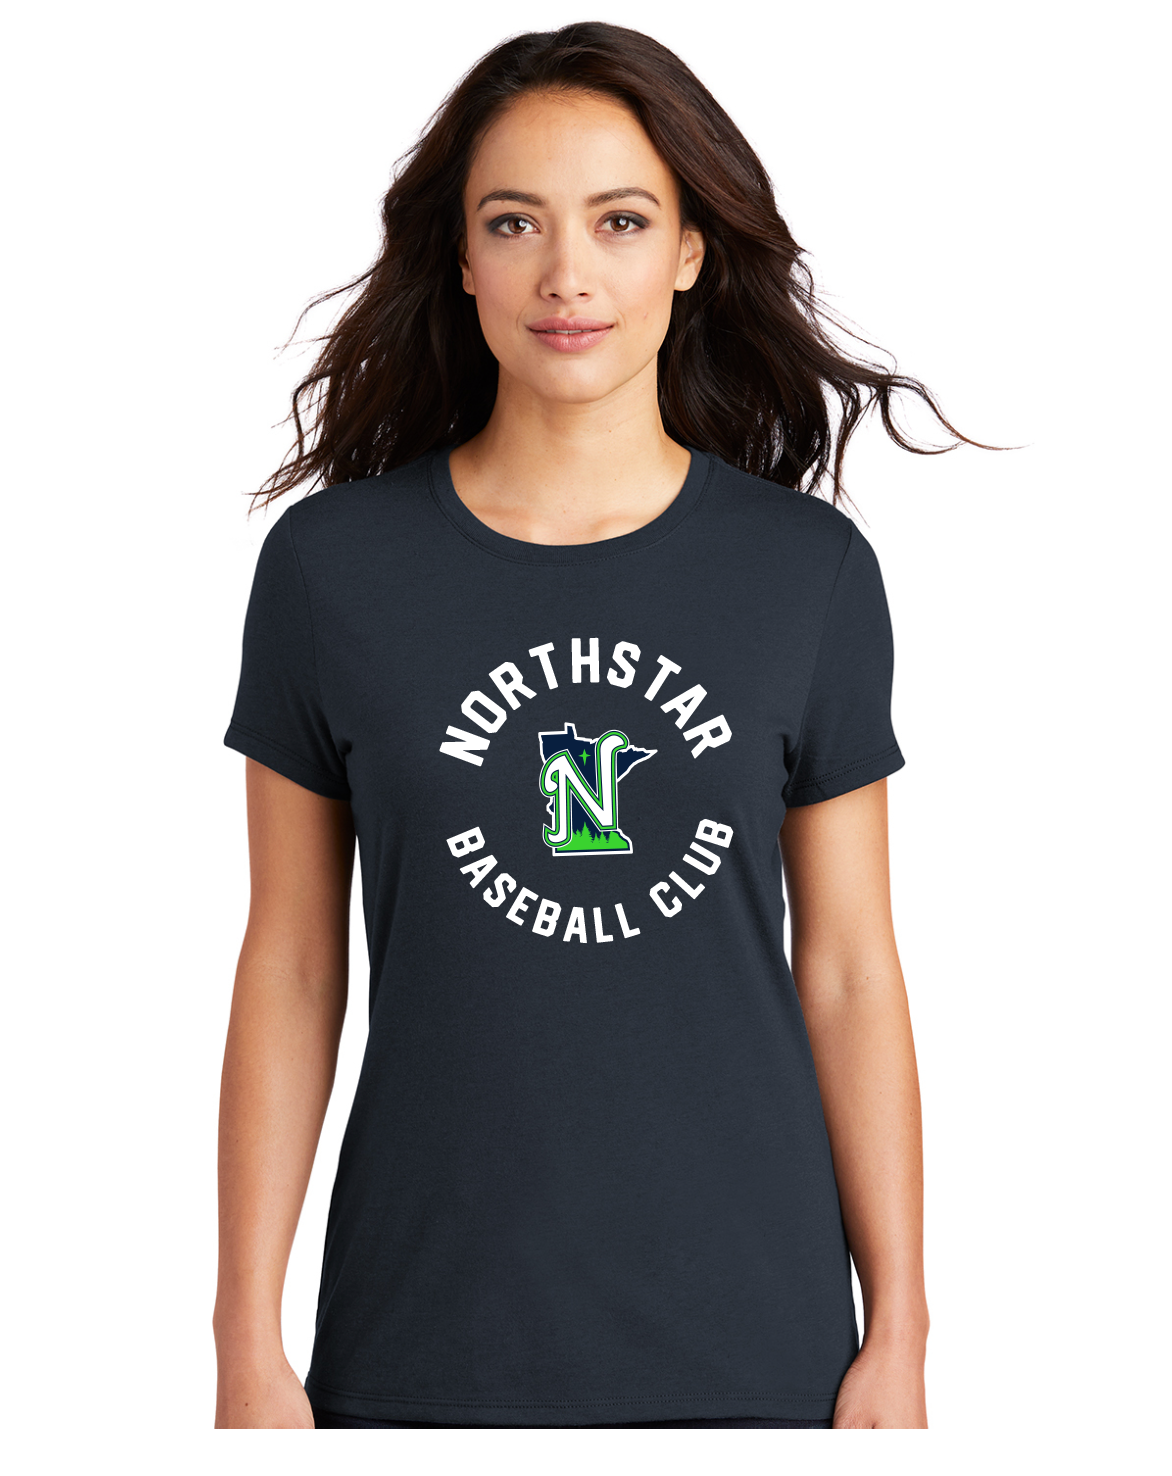 Northstar Baseball Club Ladies Tee – Loudly